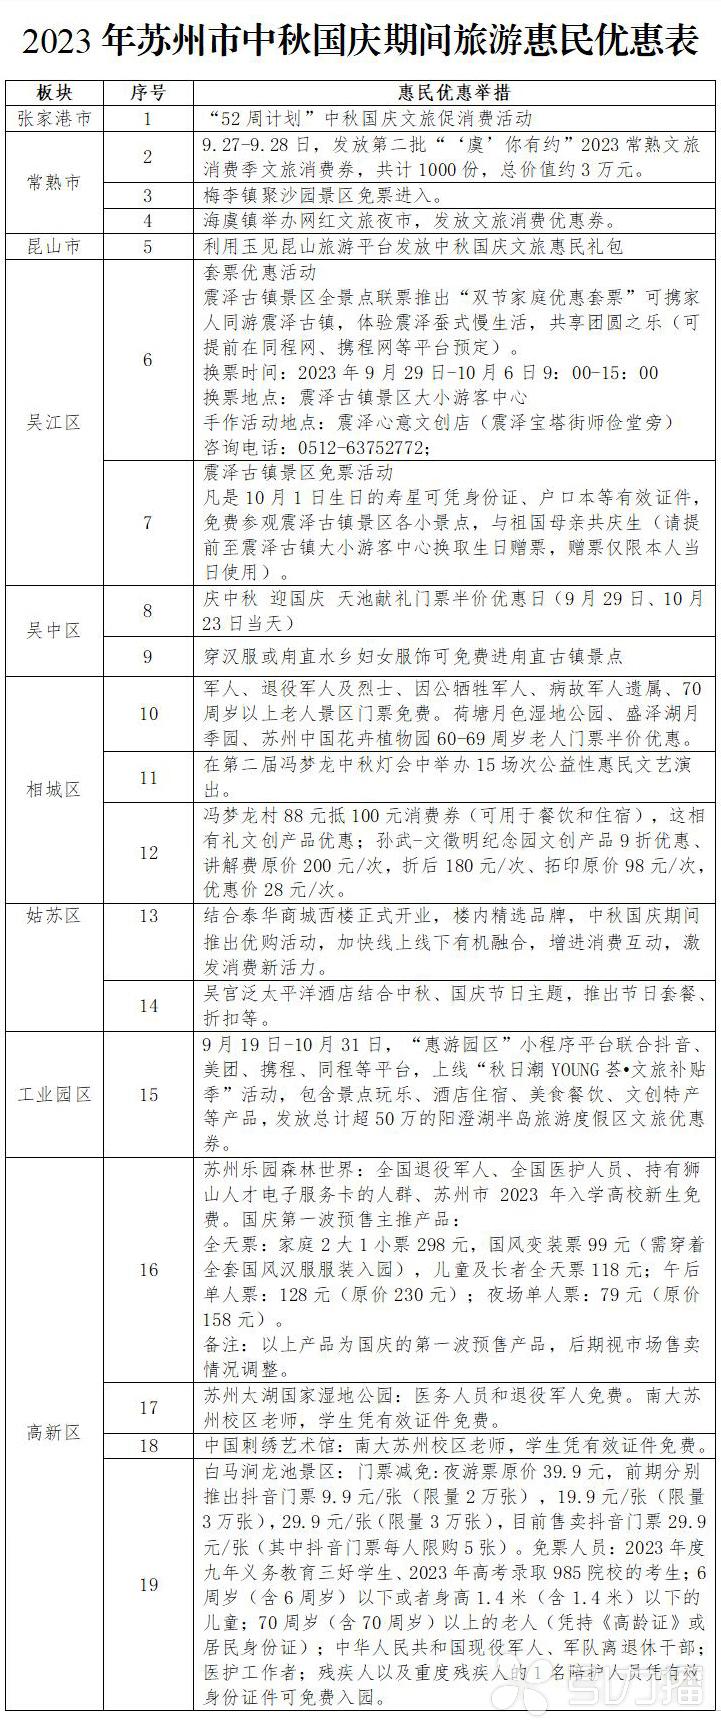 佳电股份信息披露违法违规 赵明、梁喜华被分别处以30万元、20万元罚款